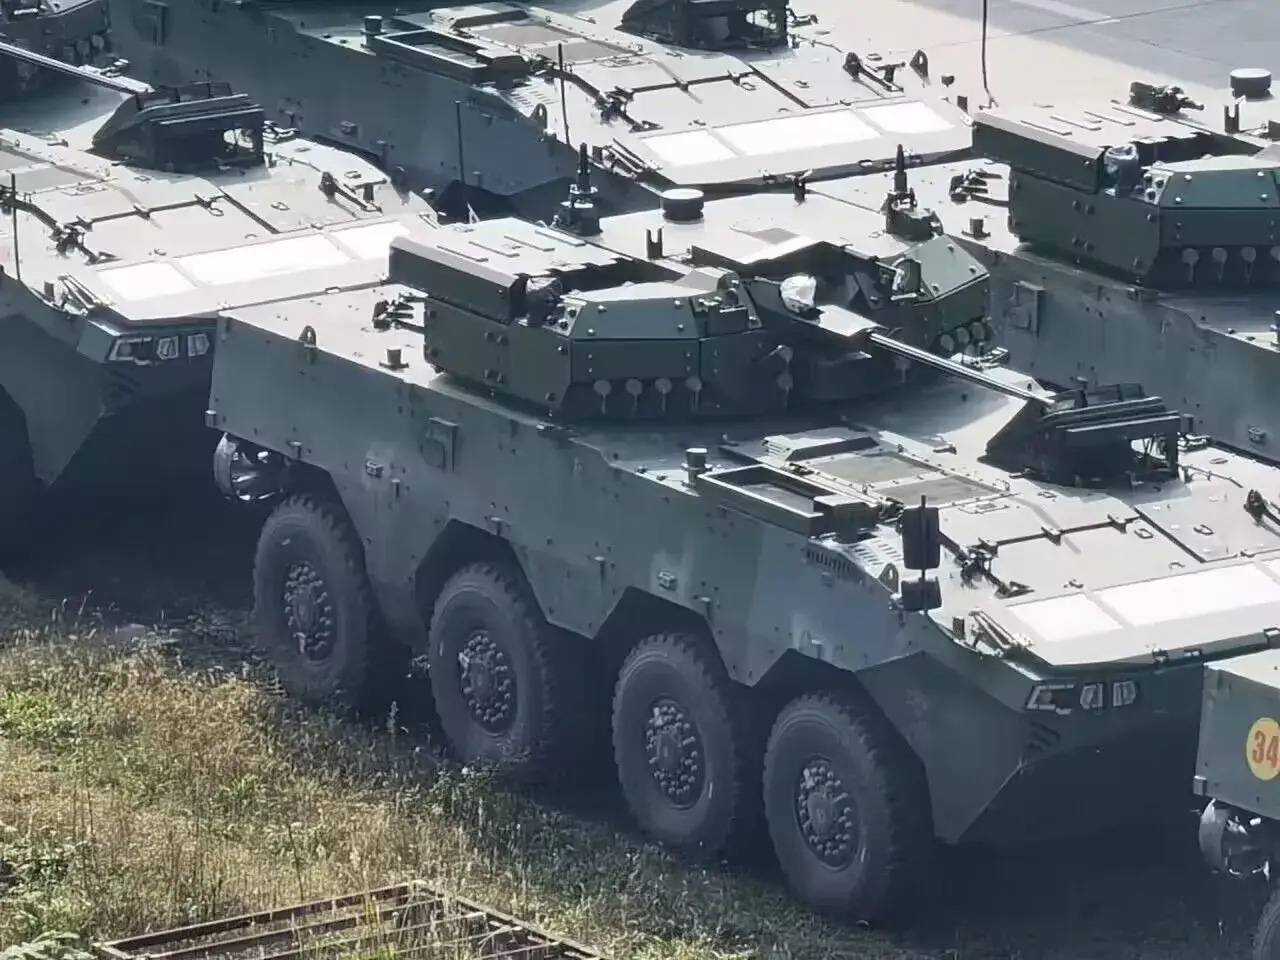 新一代大八轮装甲车曝光!采用无人炮塔等新技术,有肉眼可见的进步!